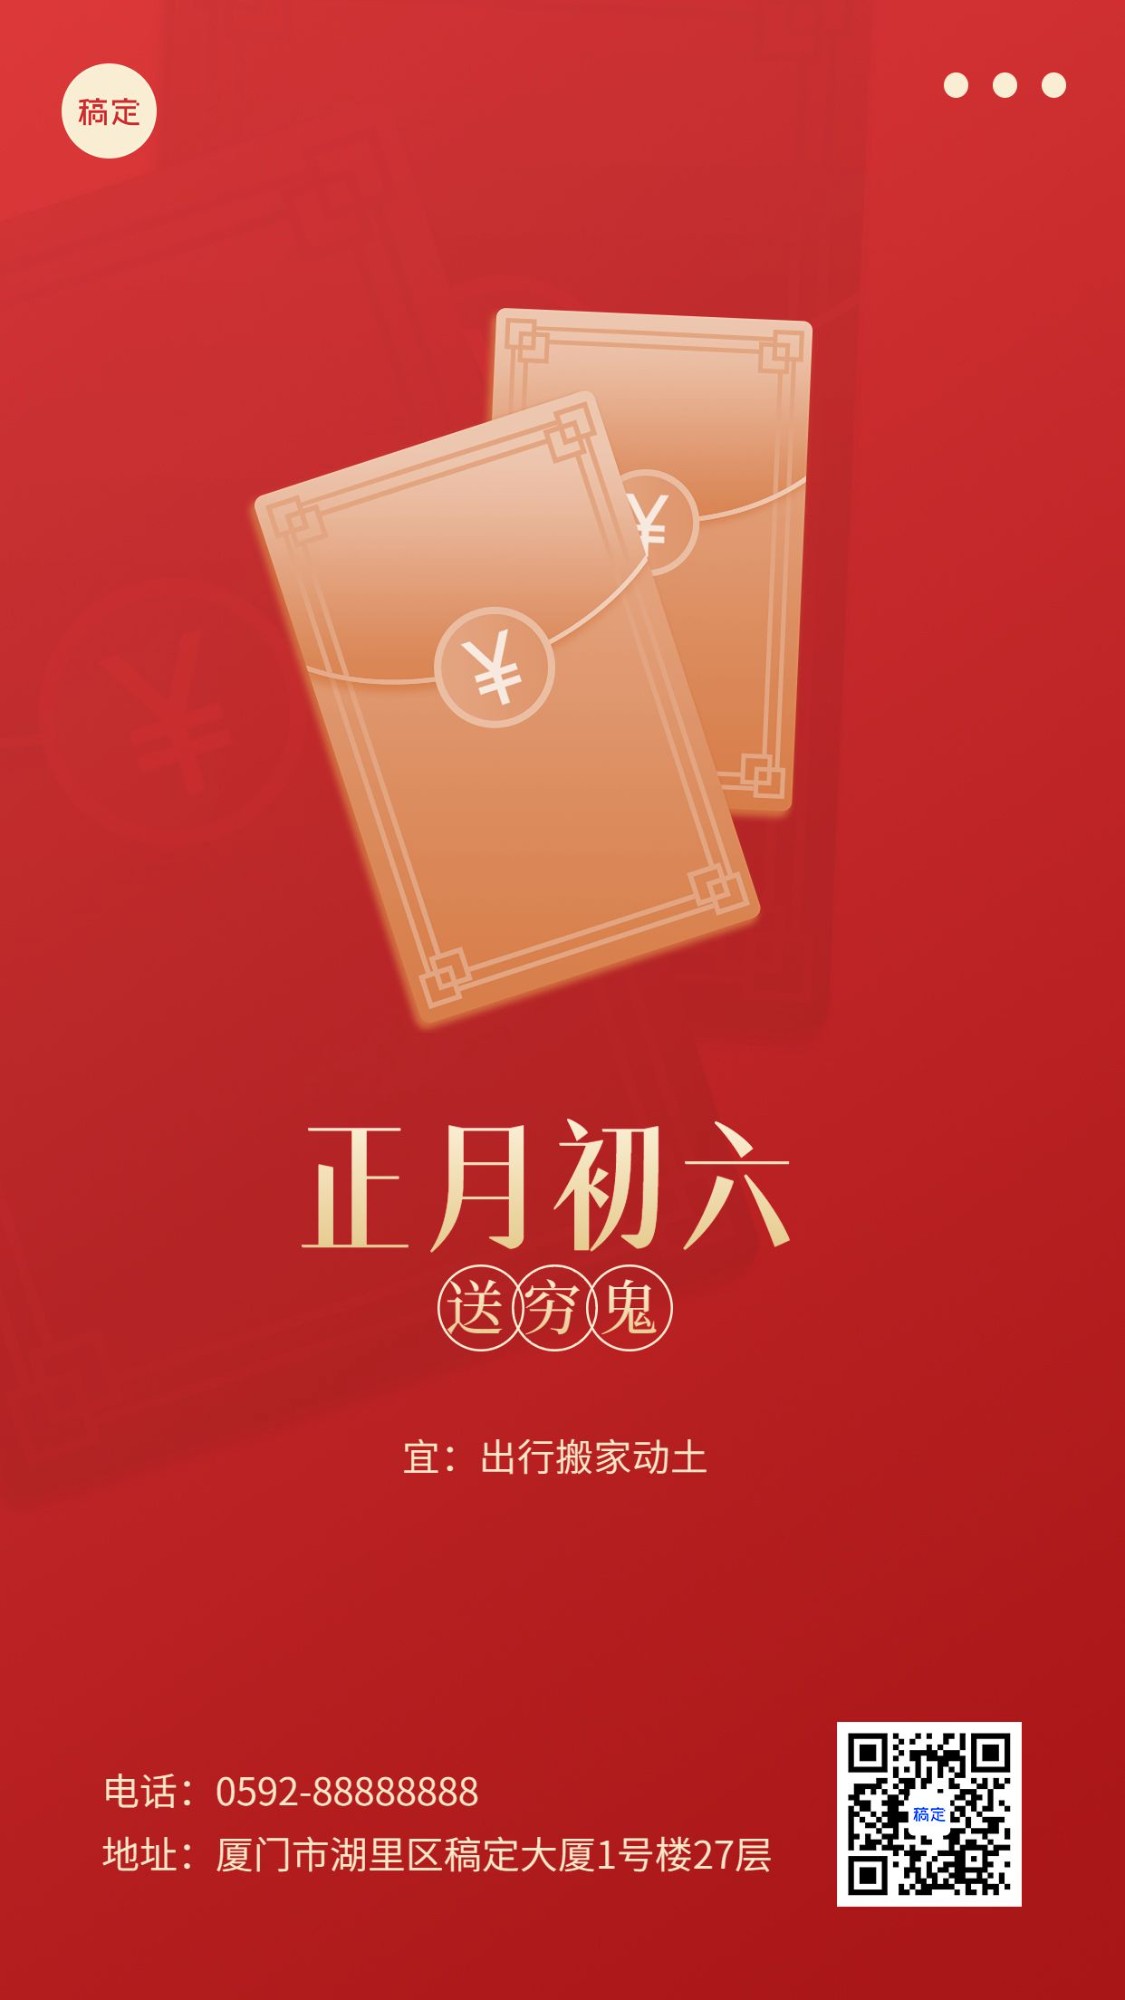 春节新年祝福正月初六简约排版套系手机海报